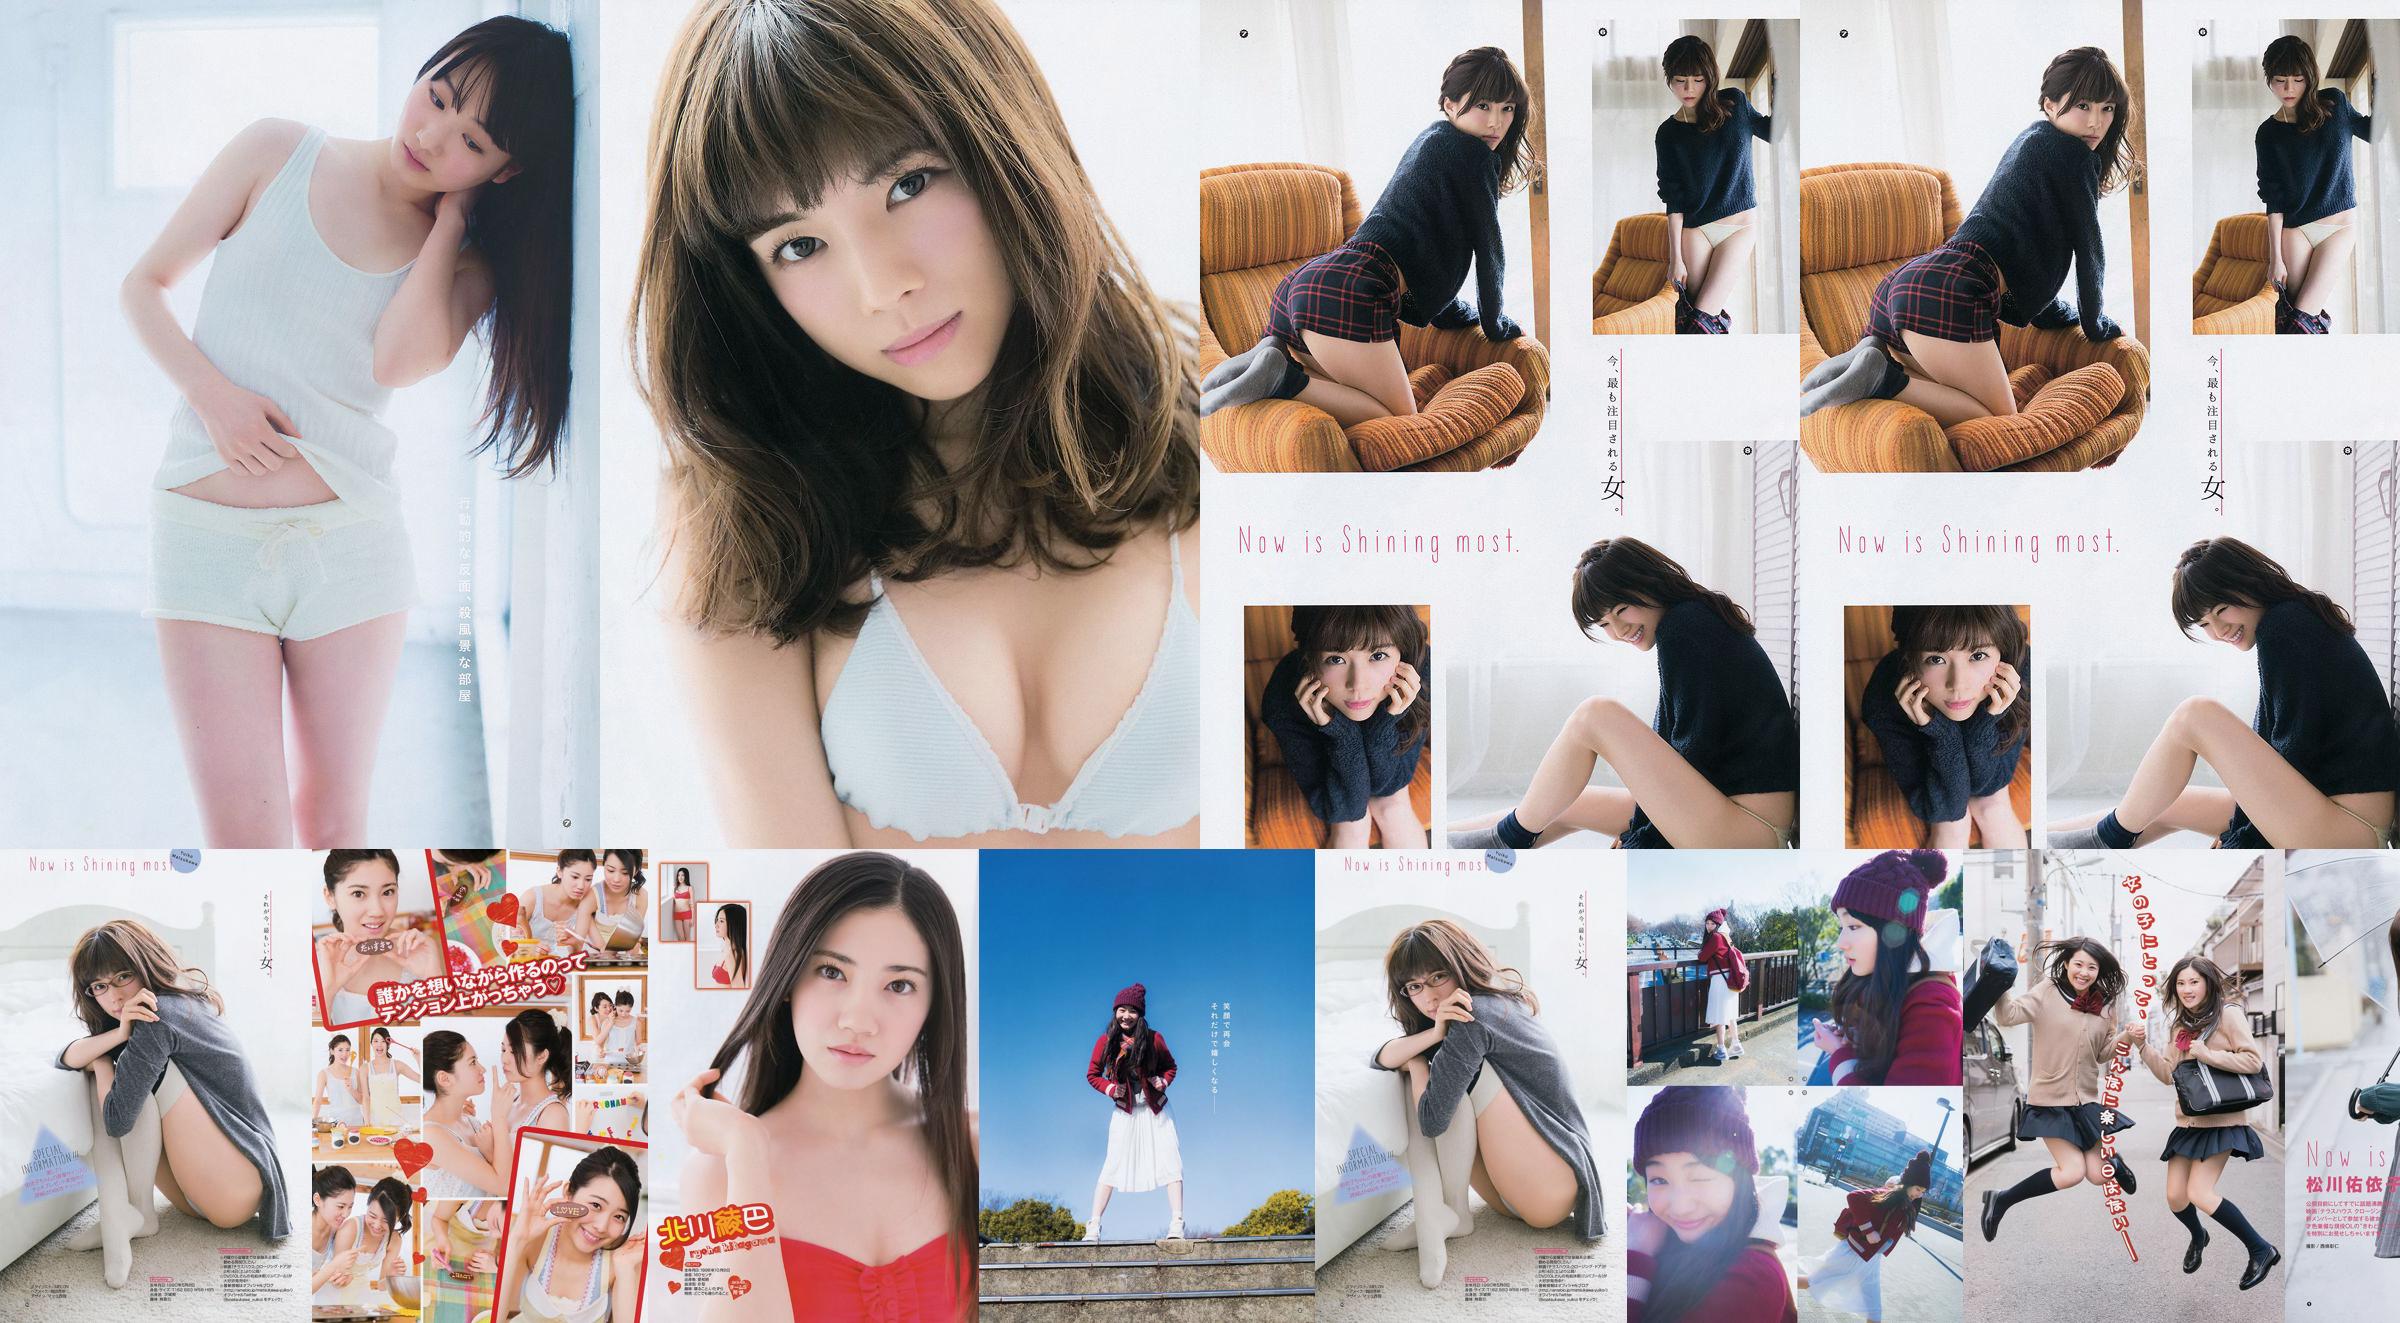 [Młody Gangan] Ryoha Kitagawa Ami Miyamae Yuiko Matsukawa Narumi Akizuki 2015 nr 04 Zdjęcie No.e6f4d5 Strona 2